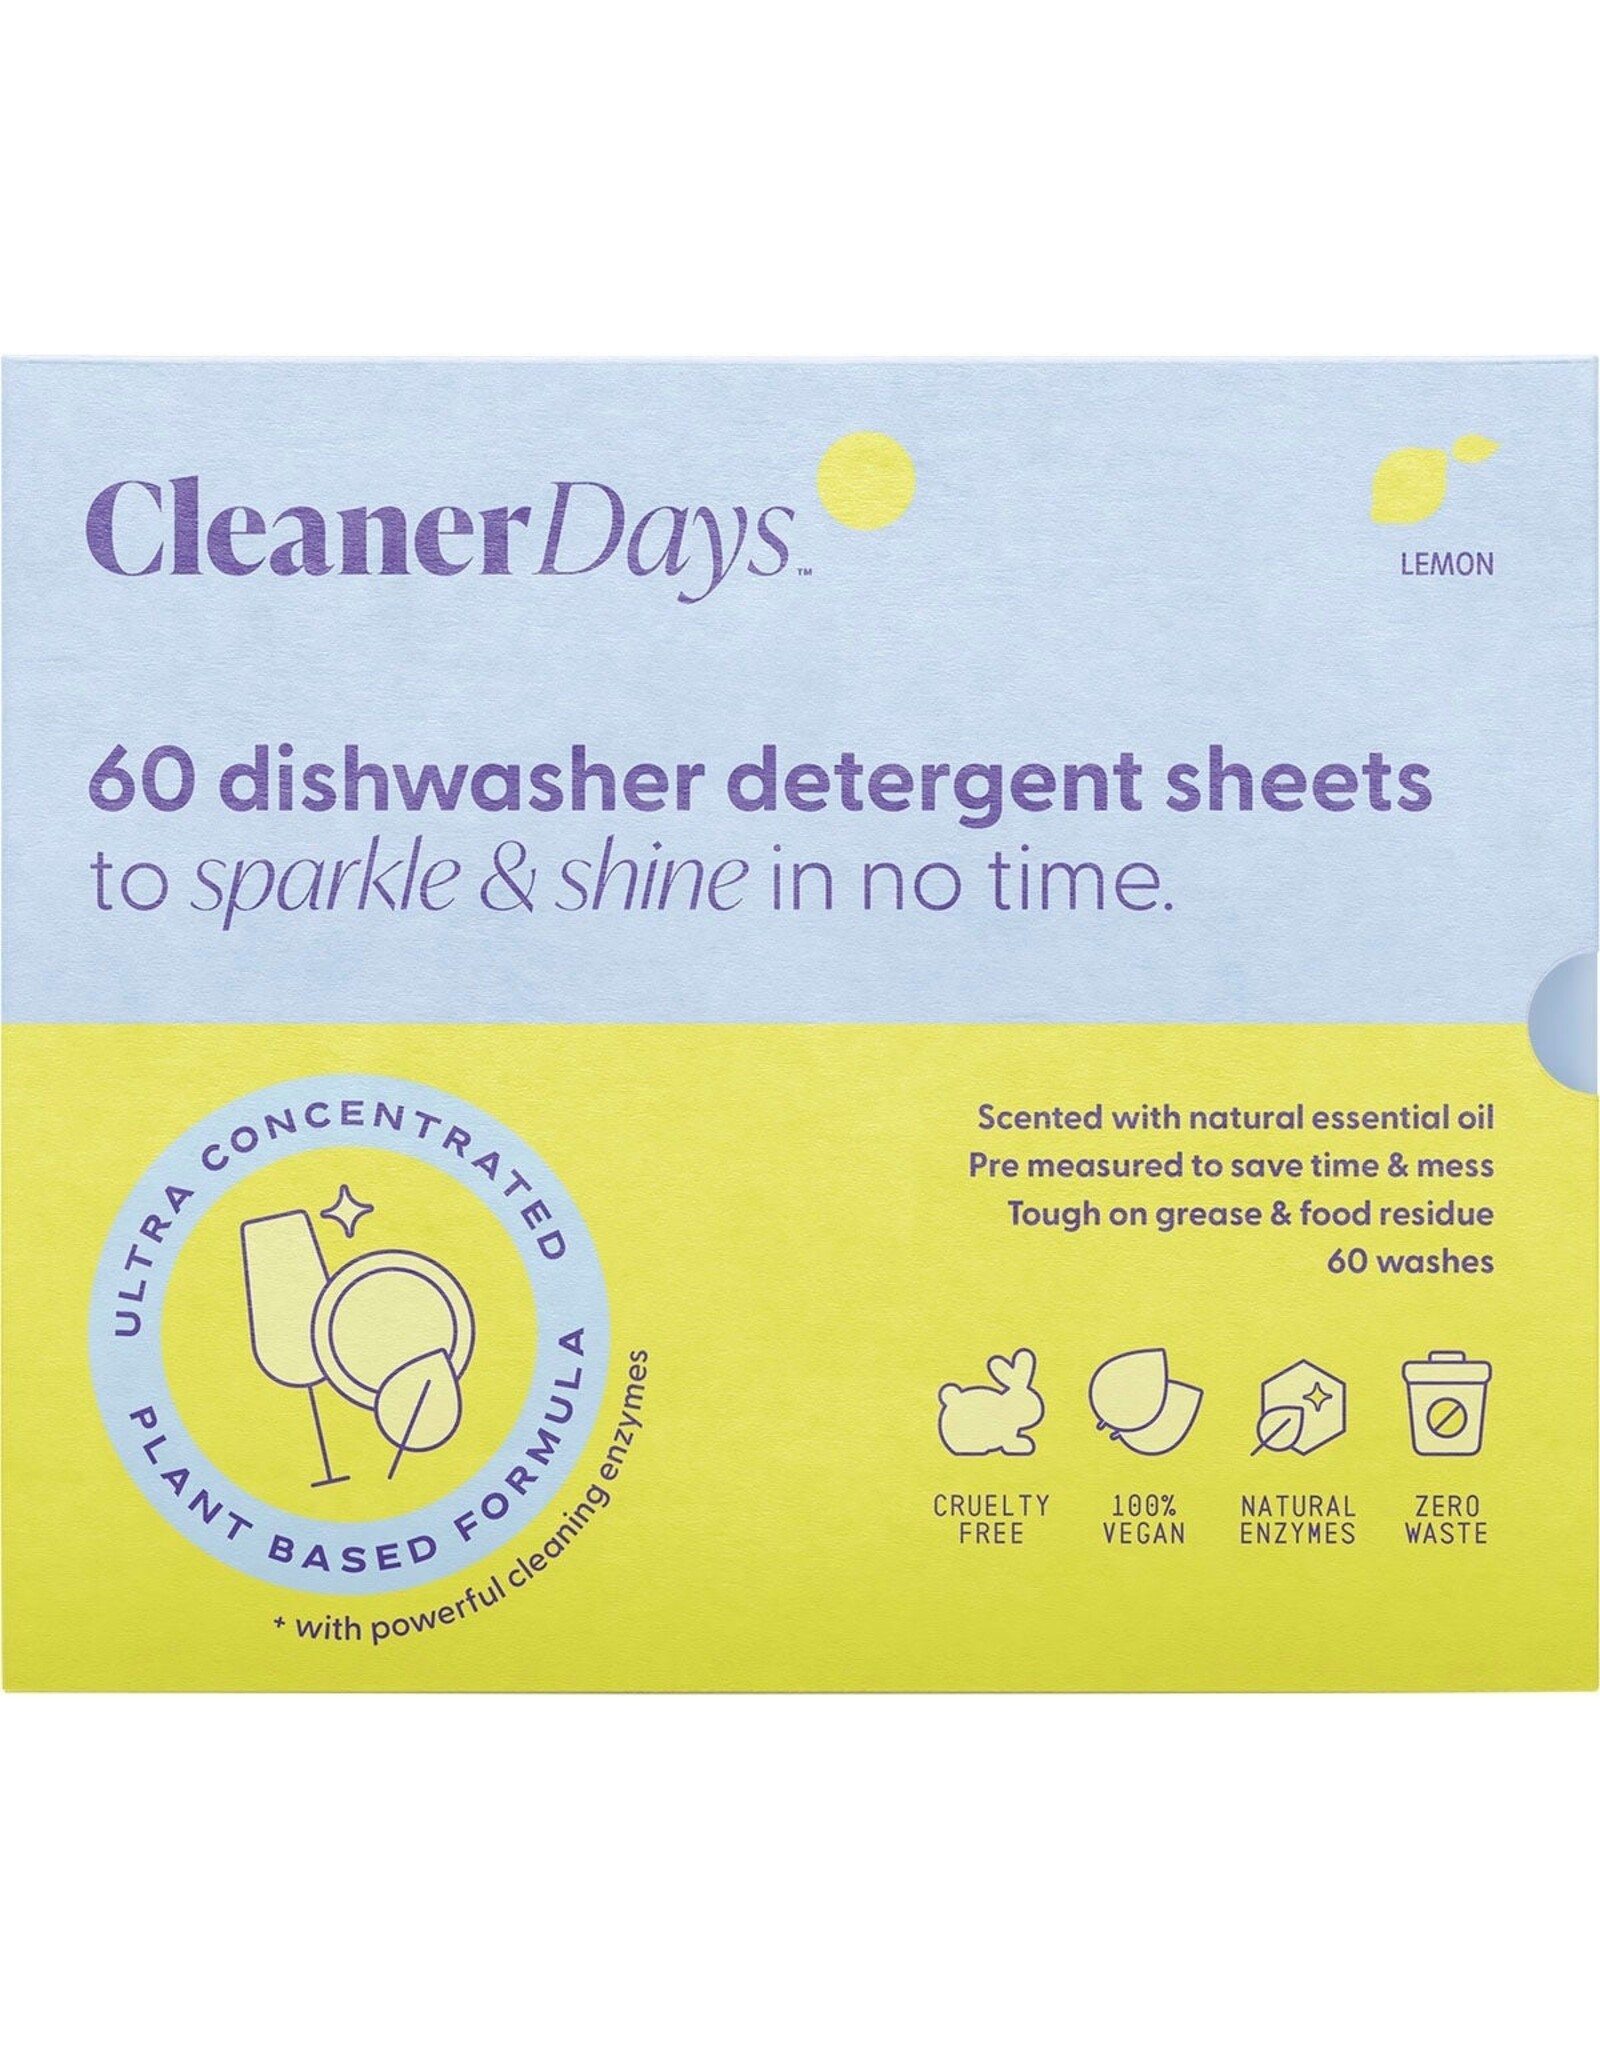 Cleaner Days Dishwasher Detergent Sheets Lemon 60pcs